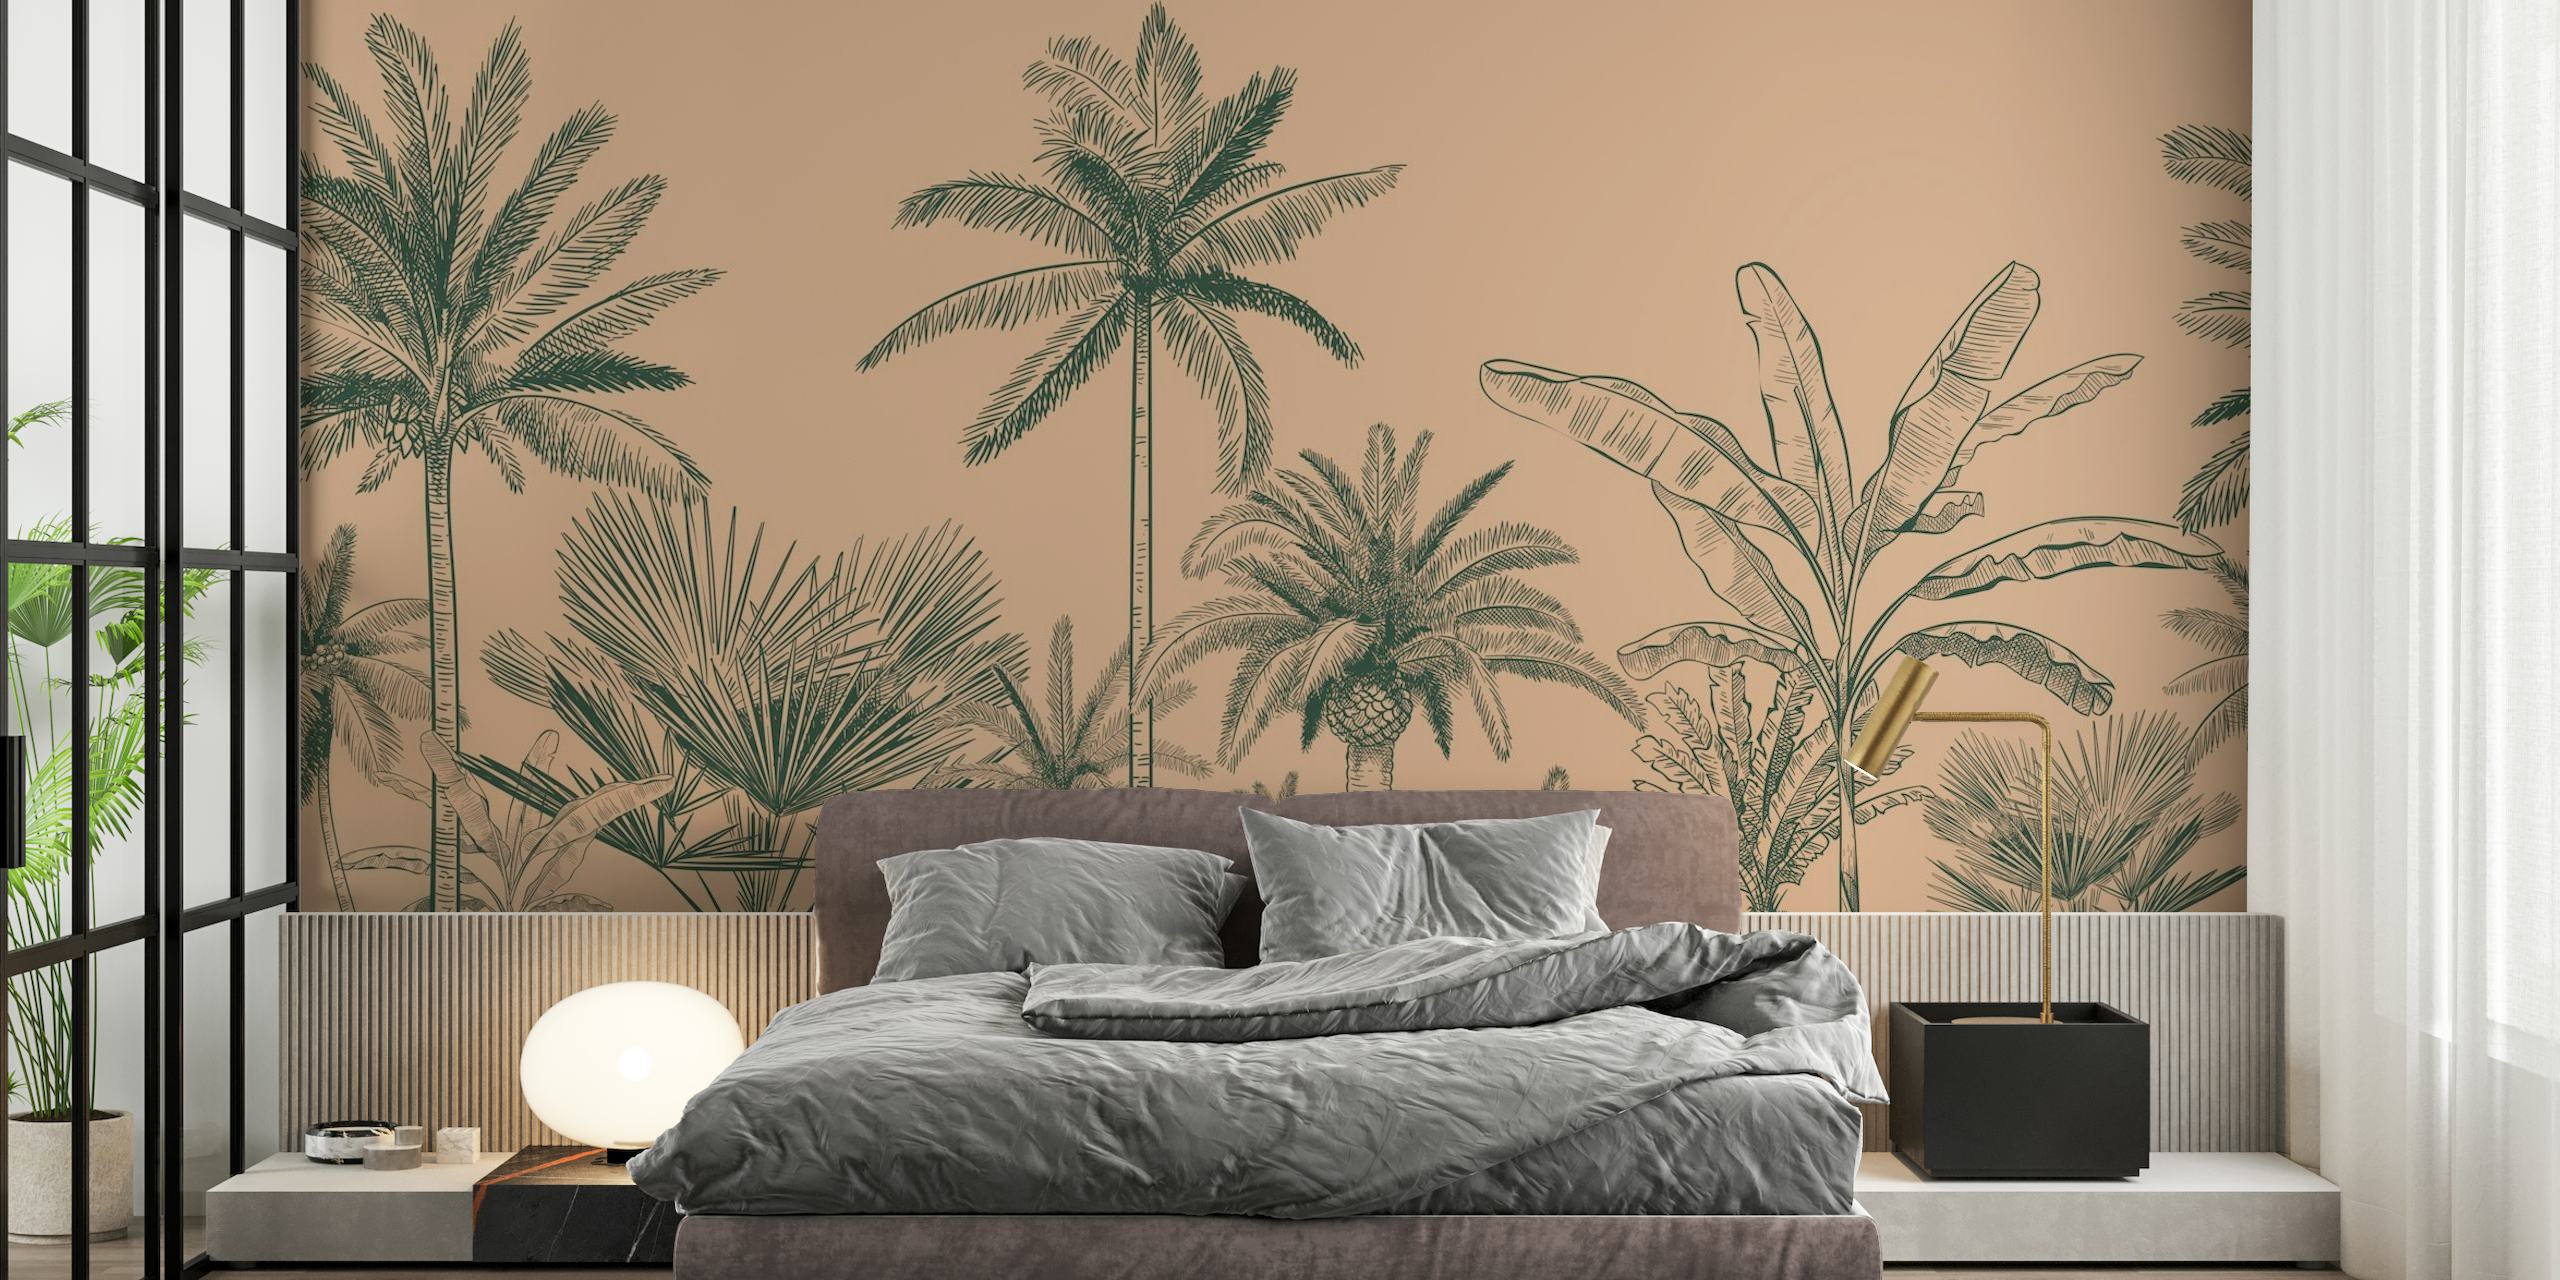 Fotomural vinílico de silhuetas de palmeiras em um fundo pastel para decoração de casa.